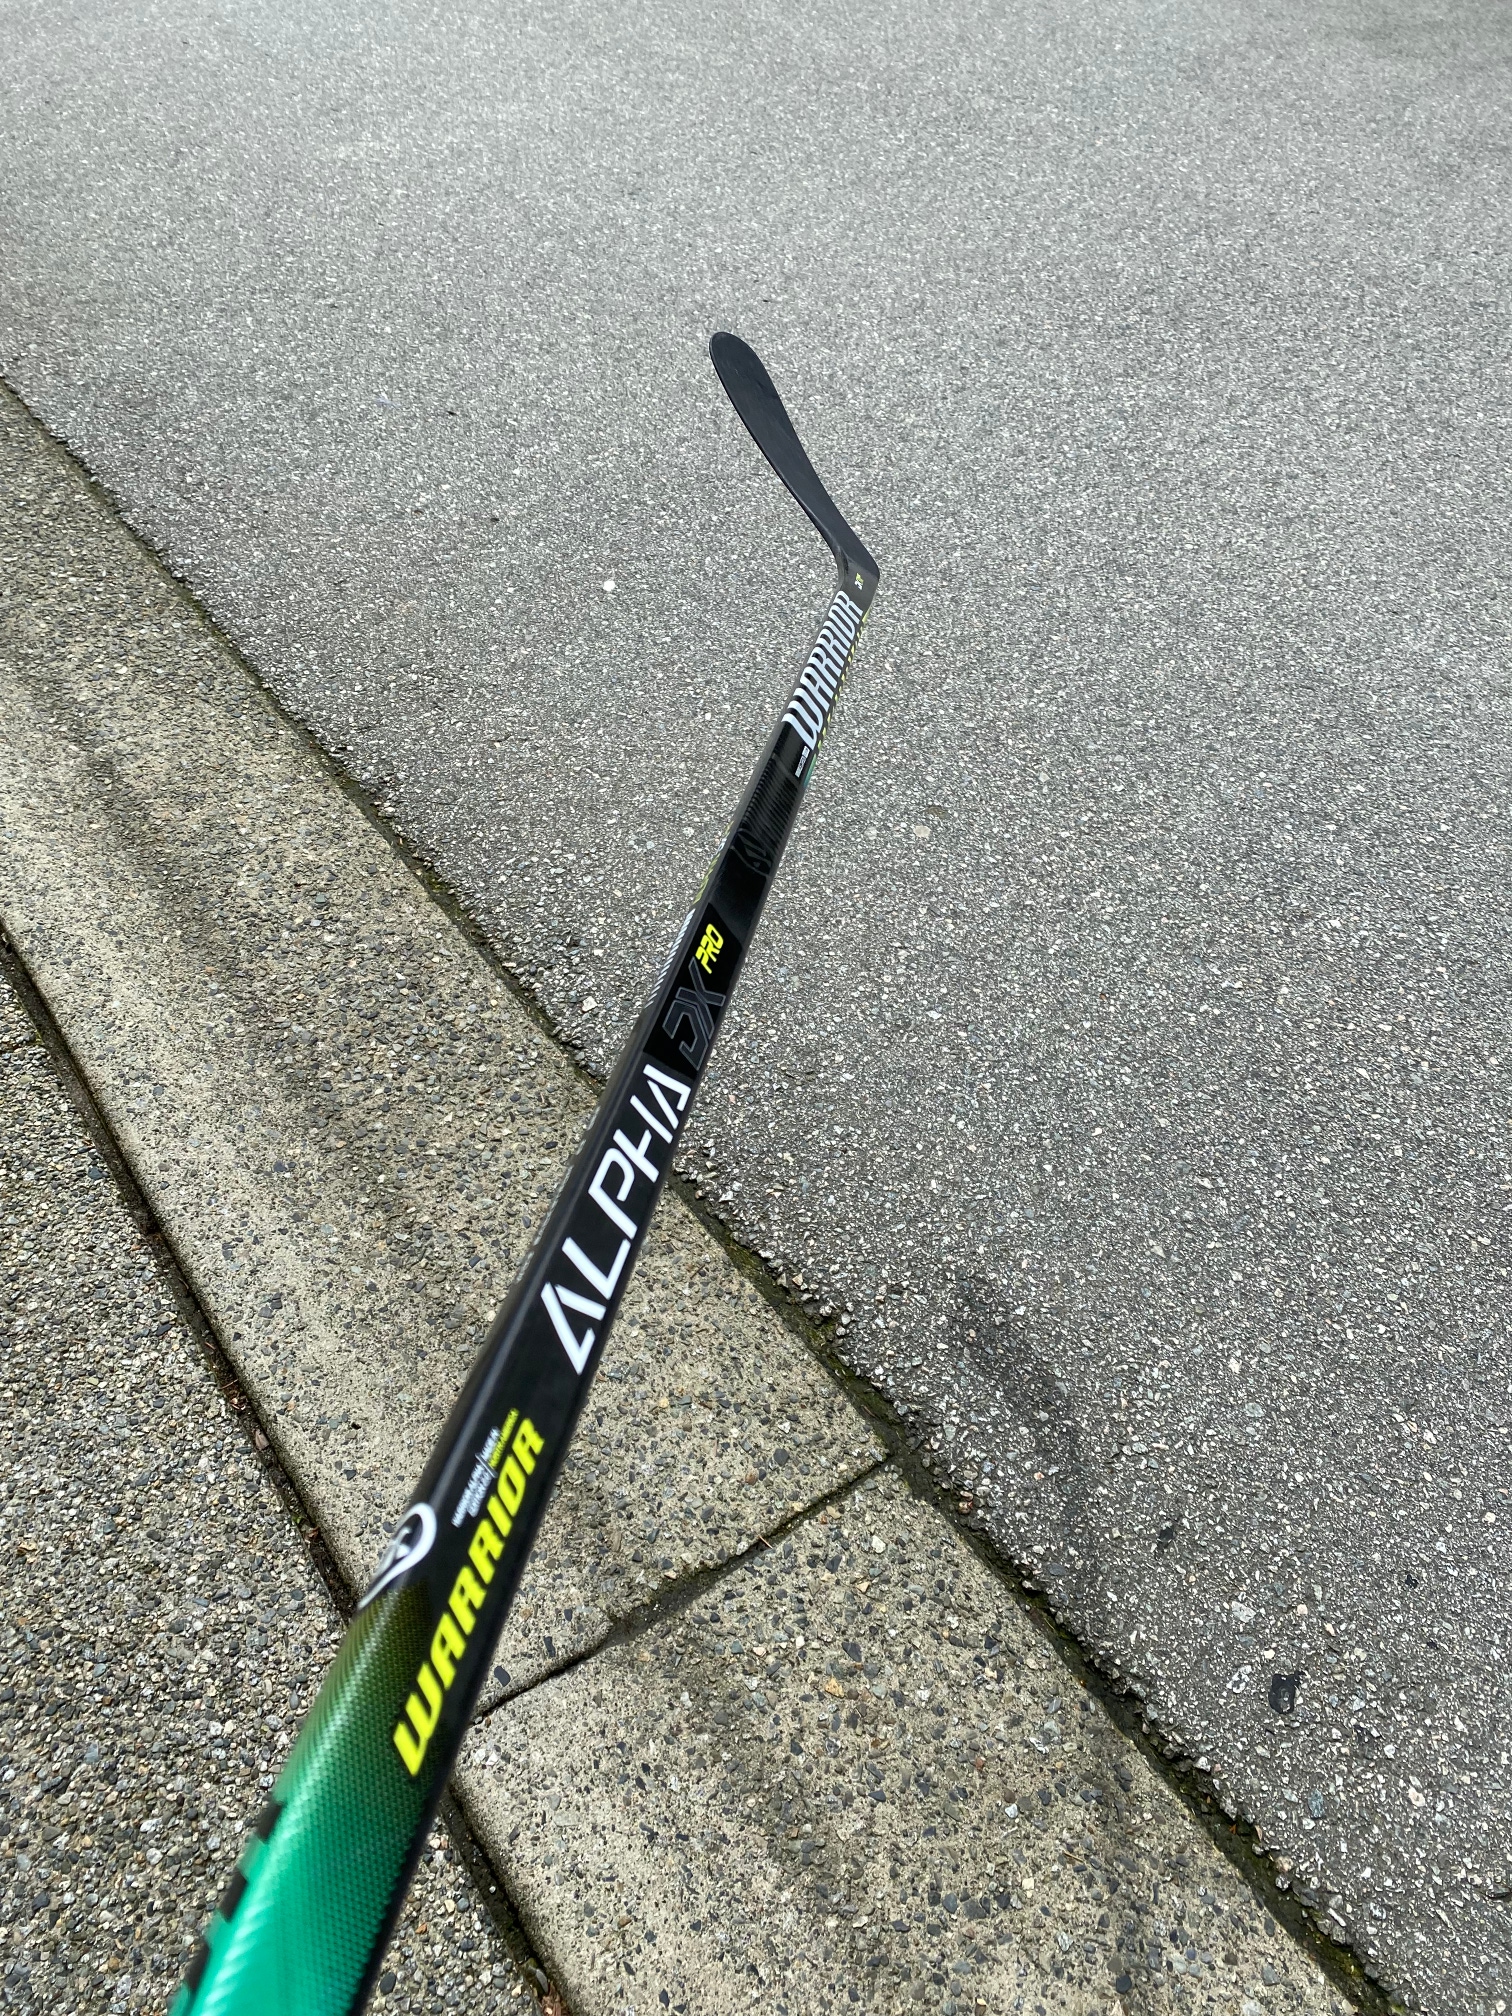 NEW Warrior Alpha DX Pro Hockey Stick (W03/63 flex)